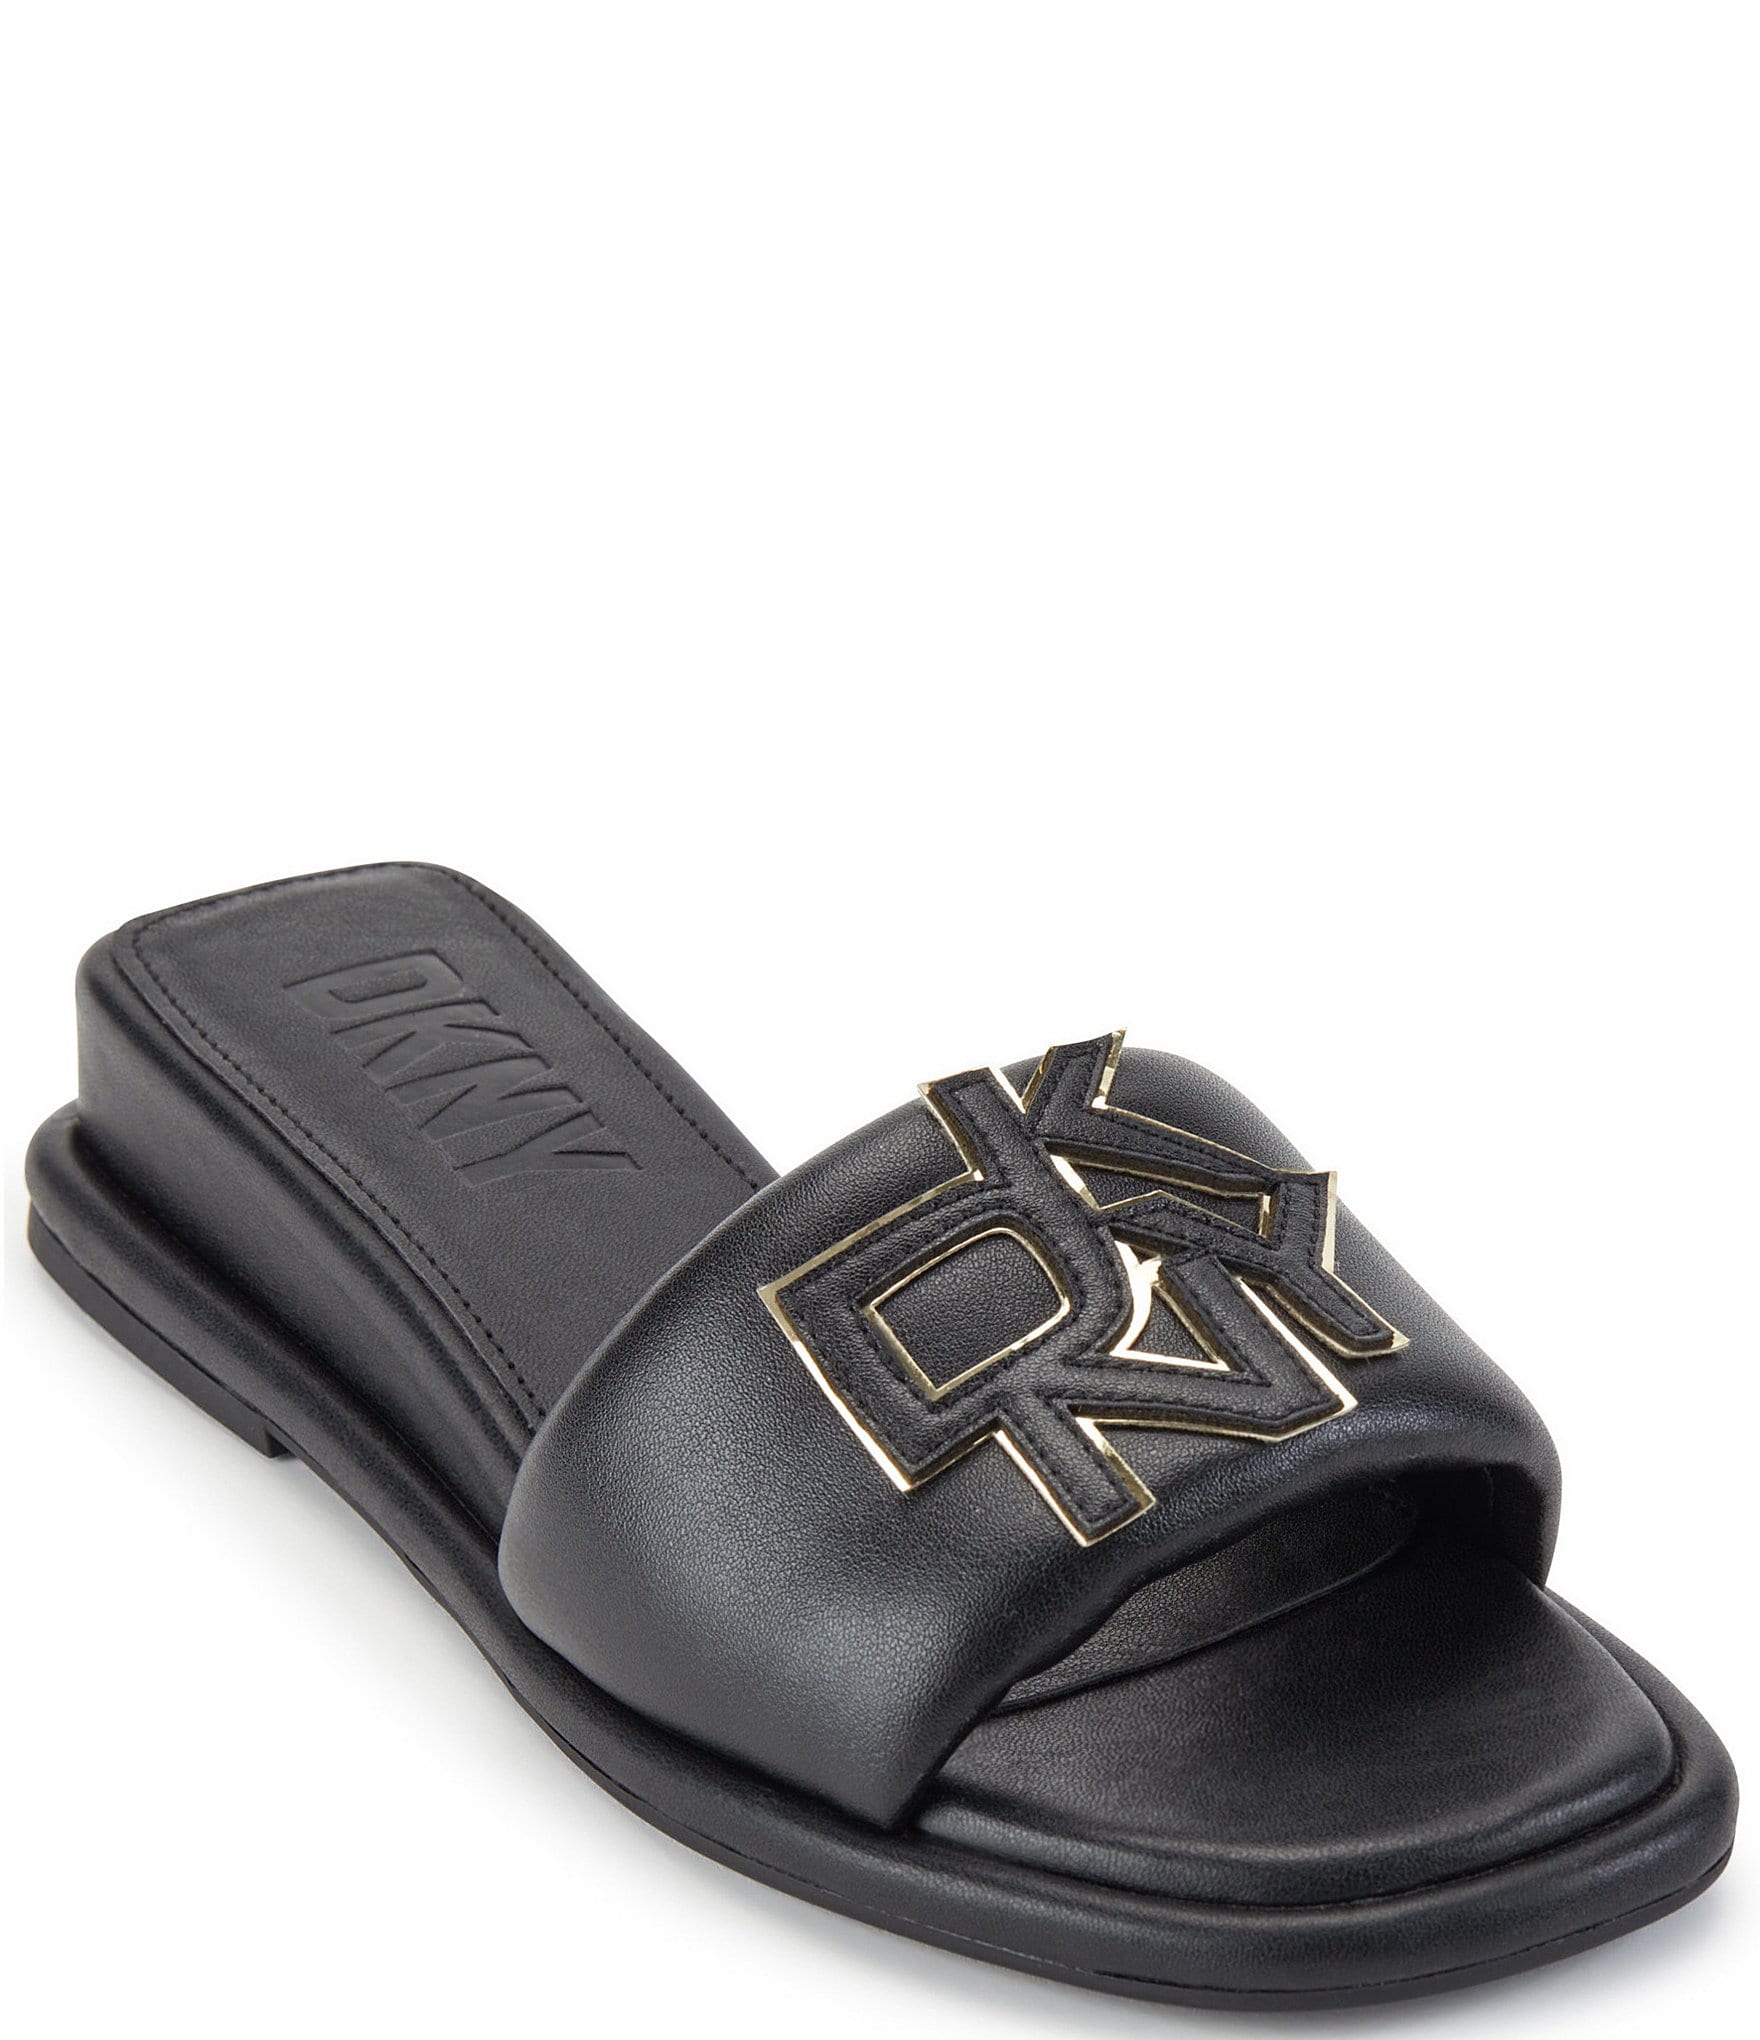 DKNY Women's Slide Sandals & Flip-Flops | Dillard's